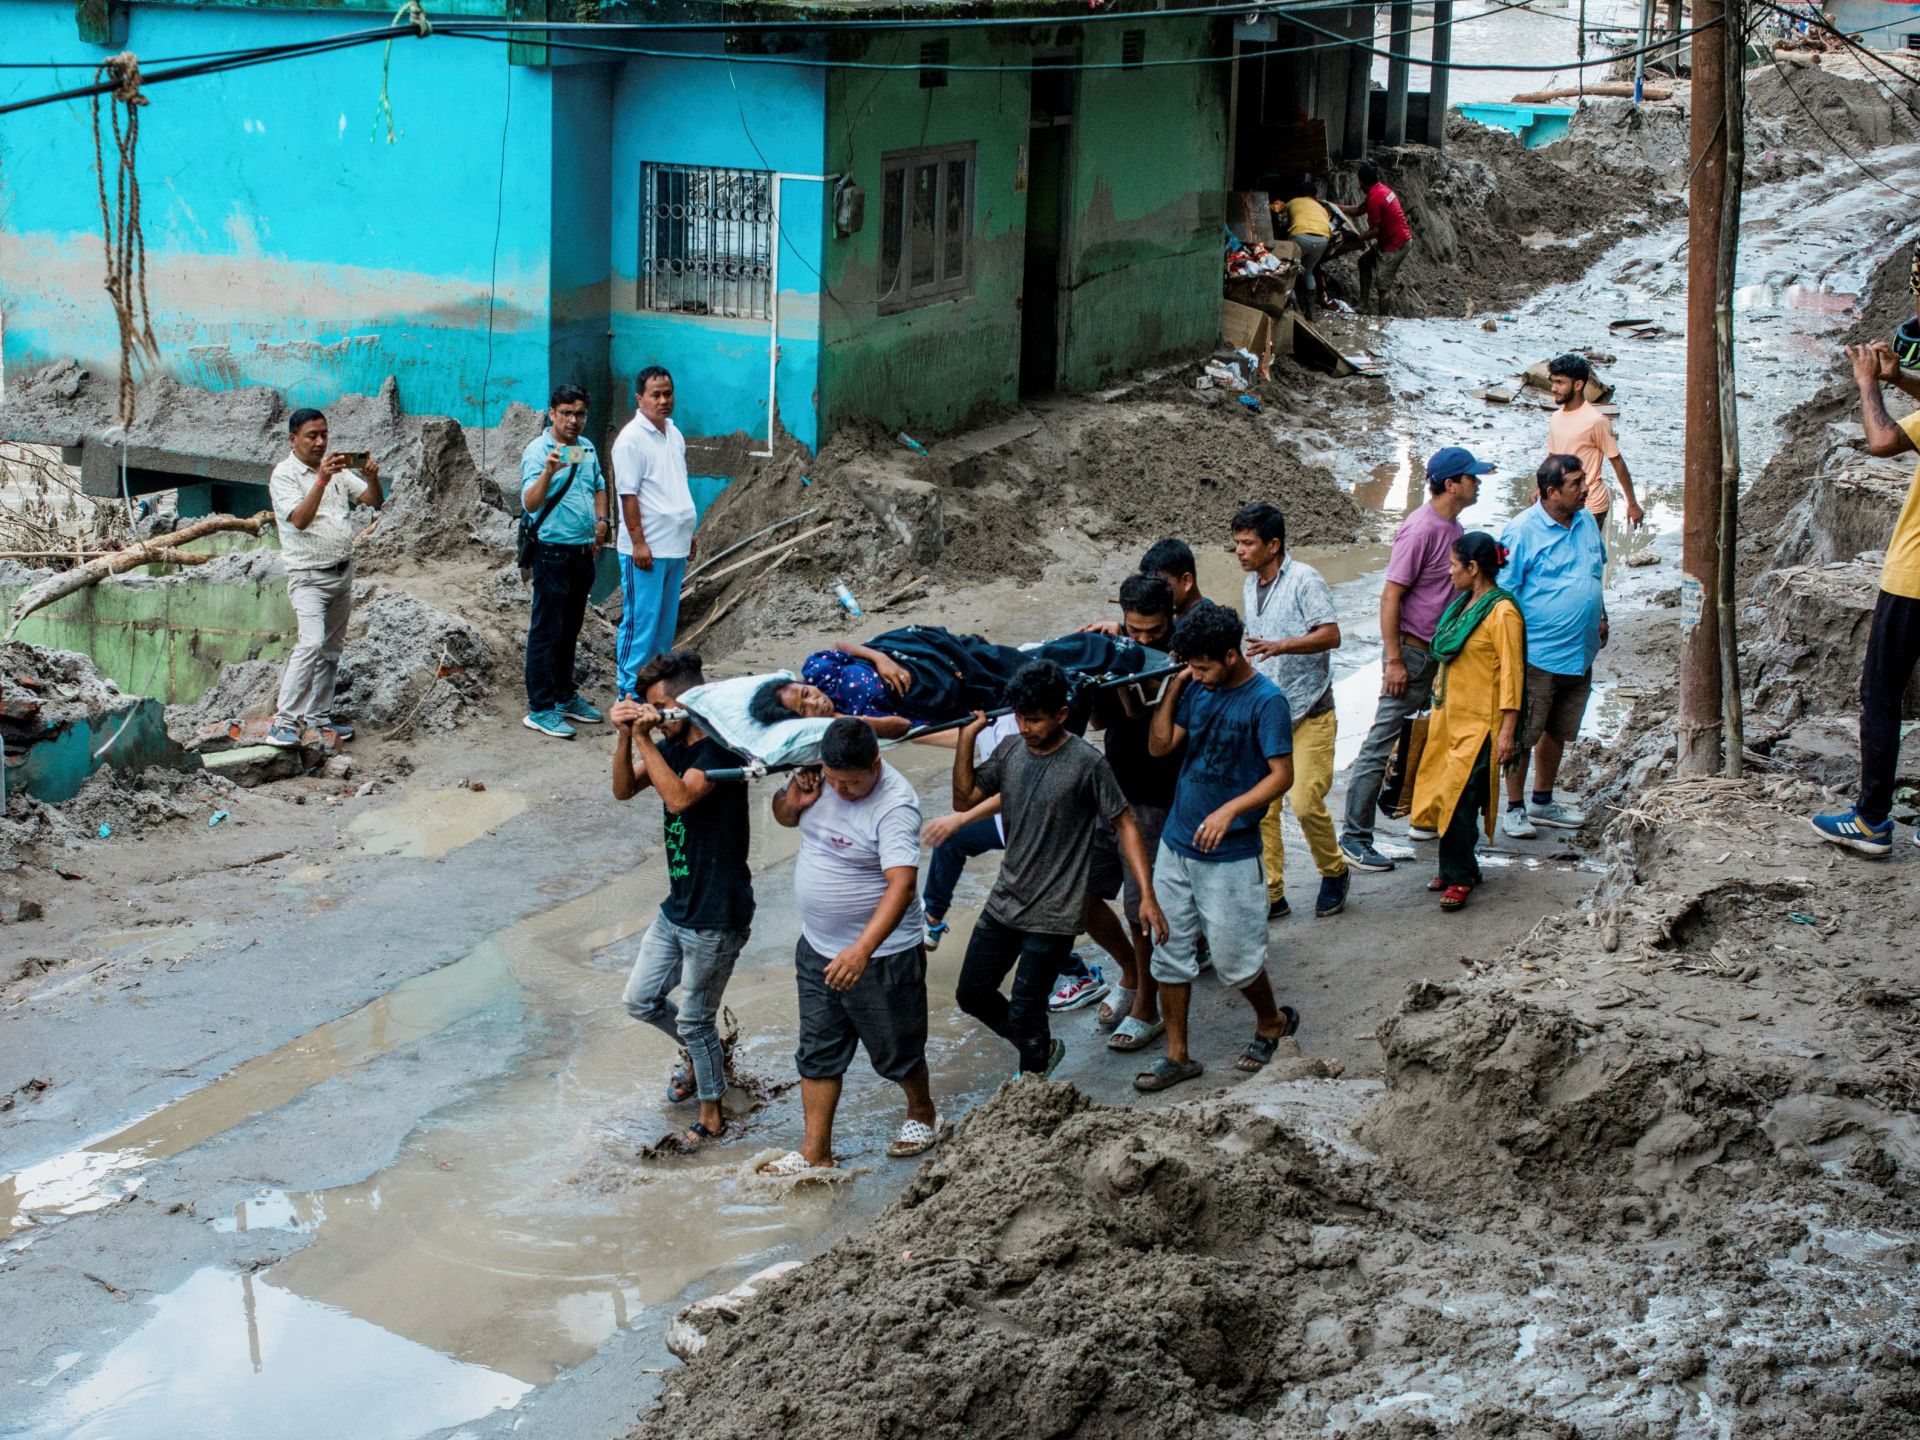 77 قتيلا في الهند بعد فيضان بحيرة جليدية بالهيمالايا | أخبار – البوكس نيوز